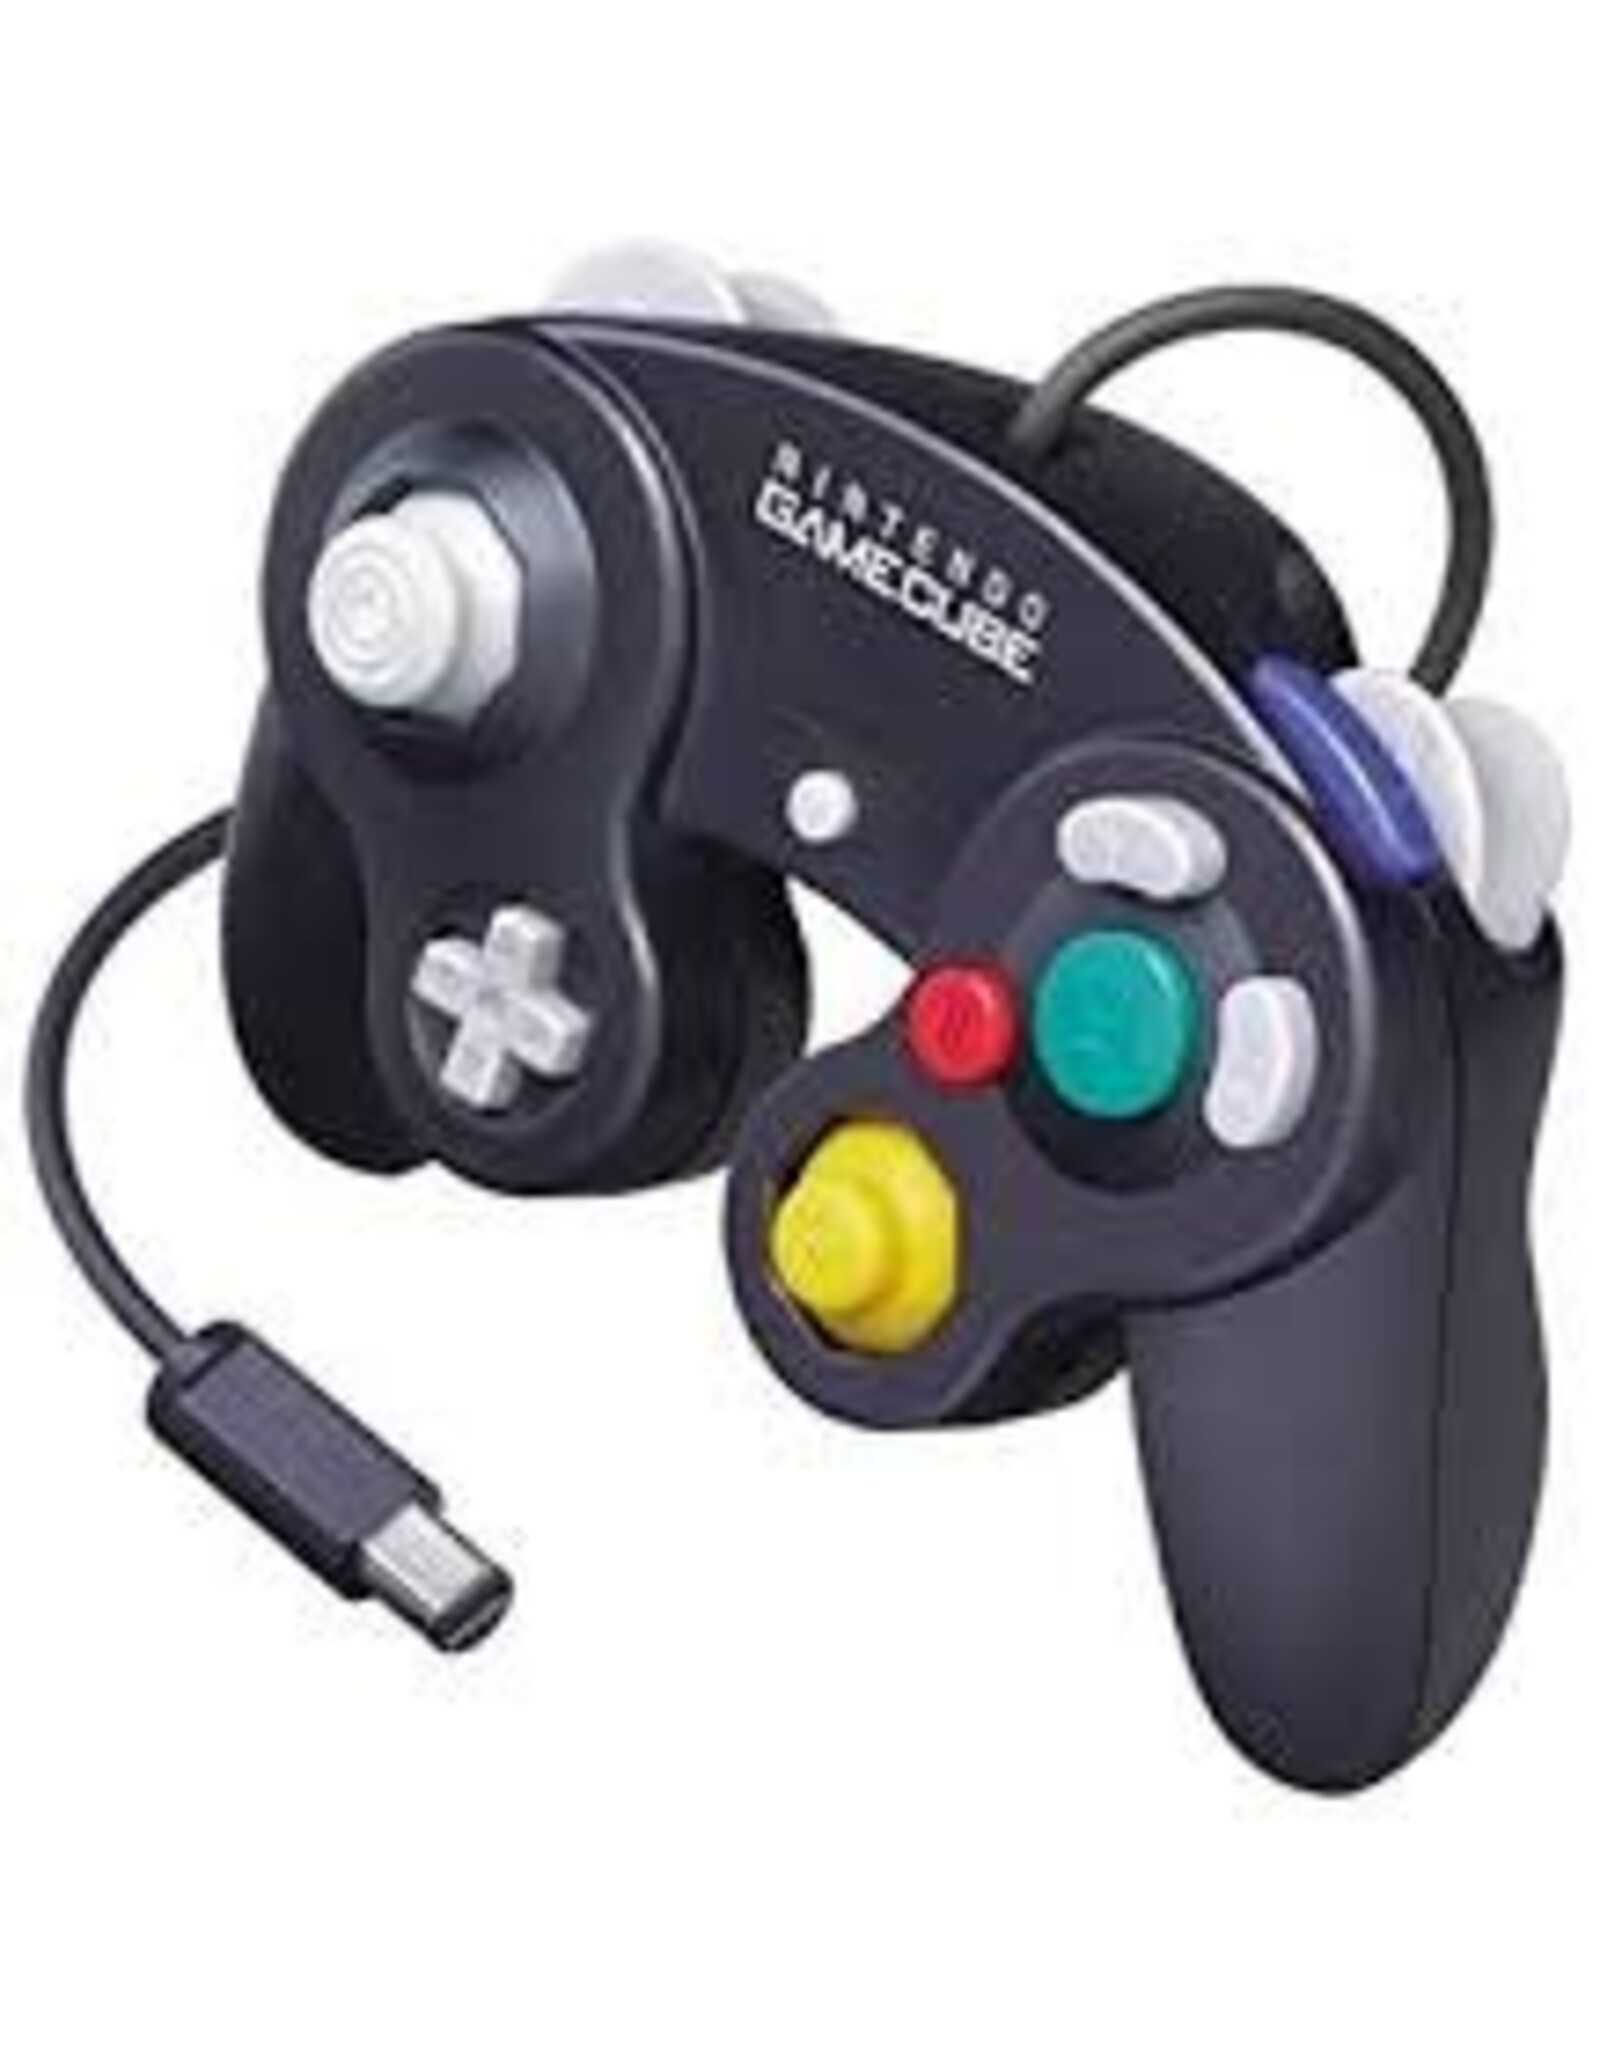 Gamecube GameCube Controller (Black, OEM)